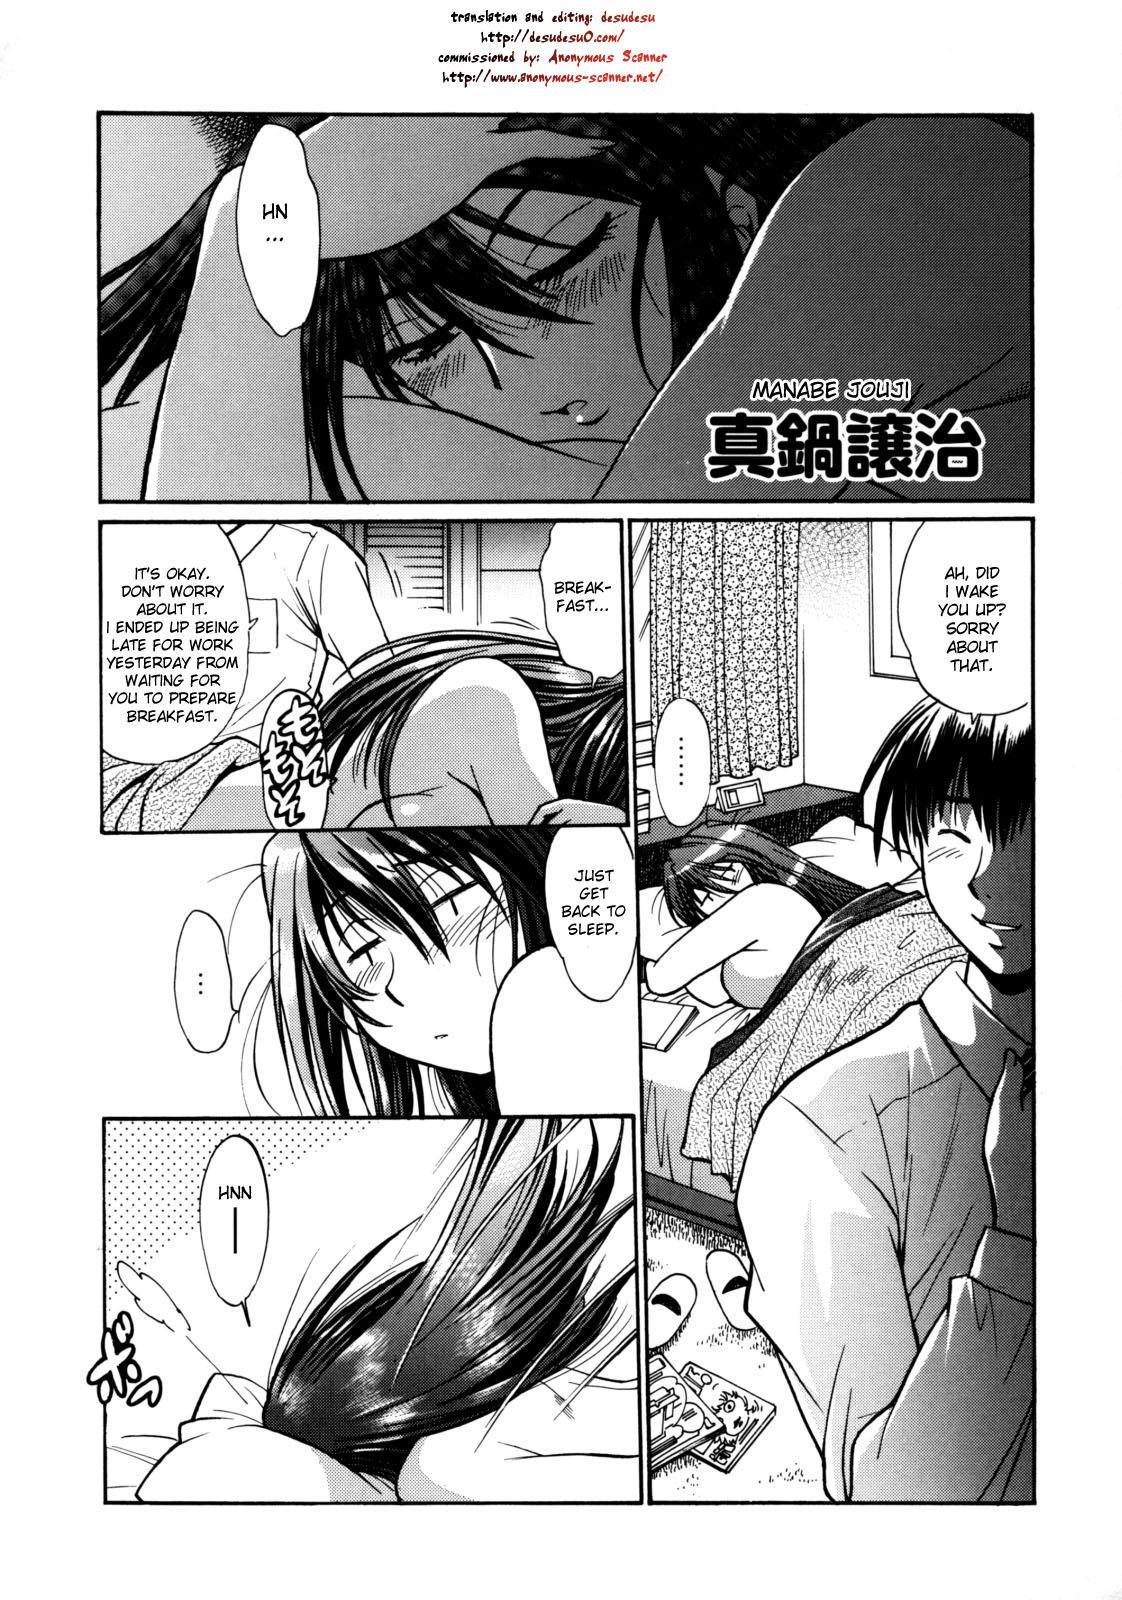 Ninfeta Shinzui Vol.6 Ch. 9 Stepdad - Page 11